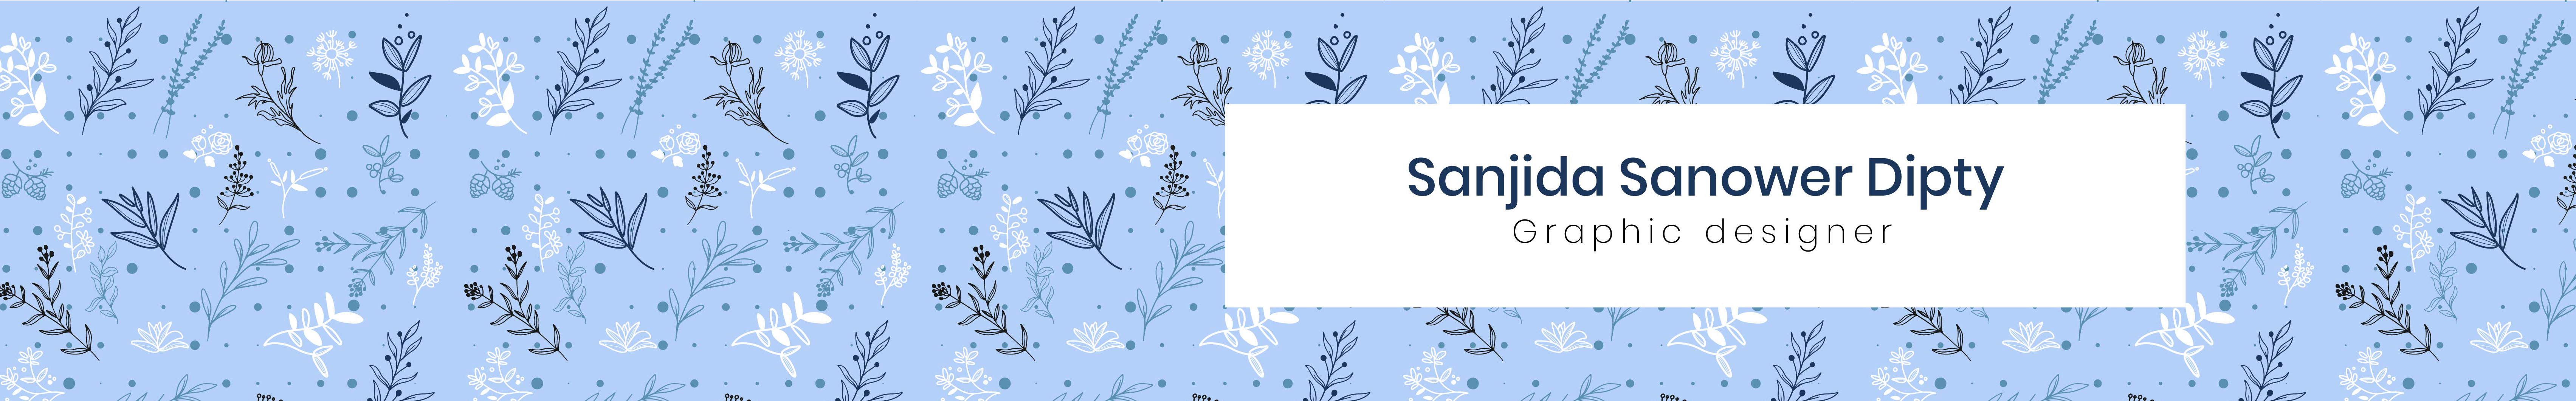 Profil-Banner von Sanjida Sanower Dipty